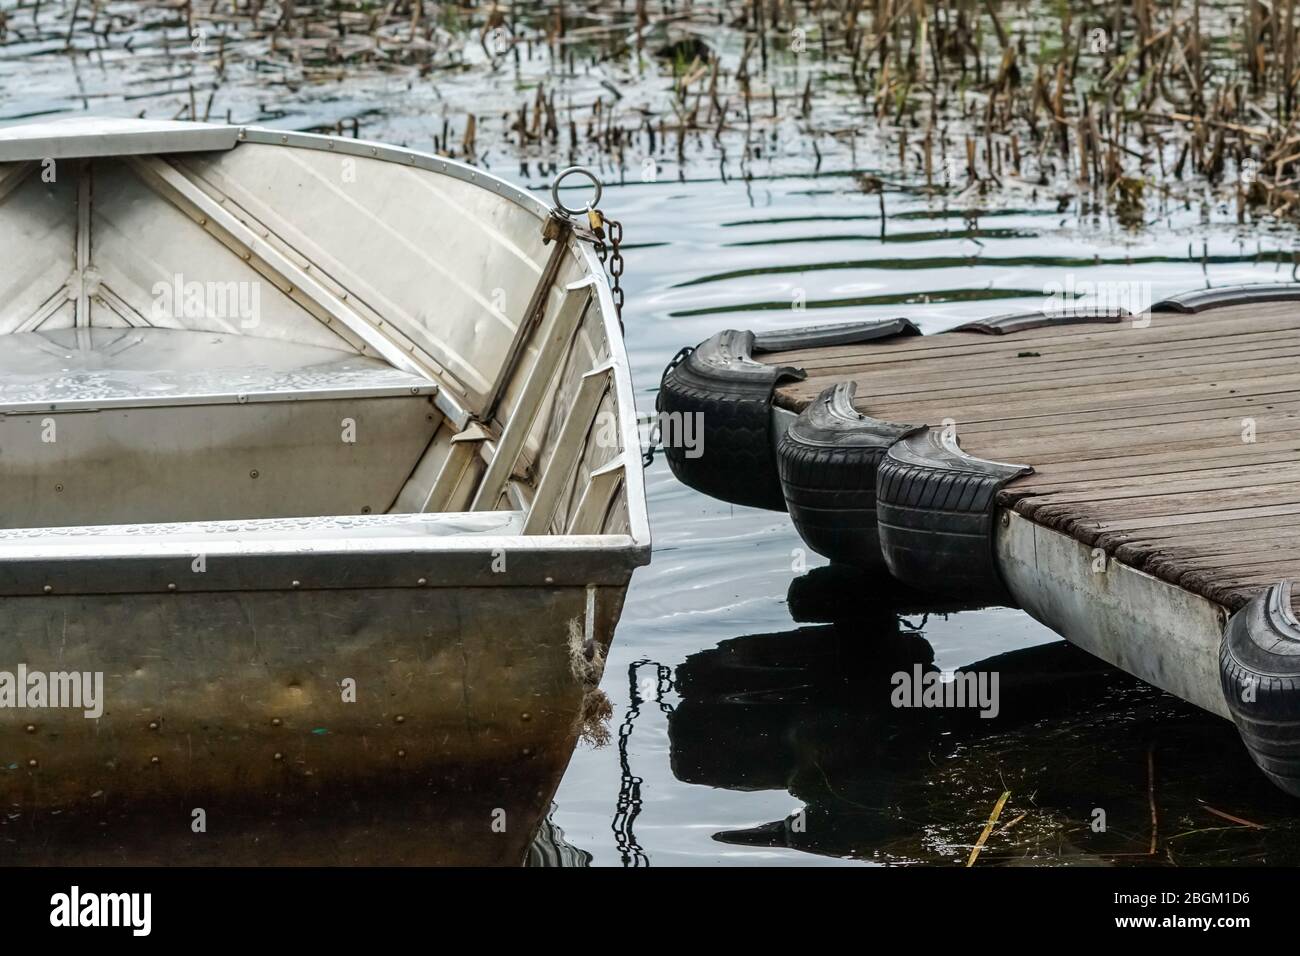 Bateau à rames d'aluminium amarré à une jetée en bois sur un lac avec des ondulations dans l'eau et roseaux dans le concept de fond abstrait plaisir et loisirs d'été Banque D'Images